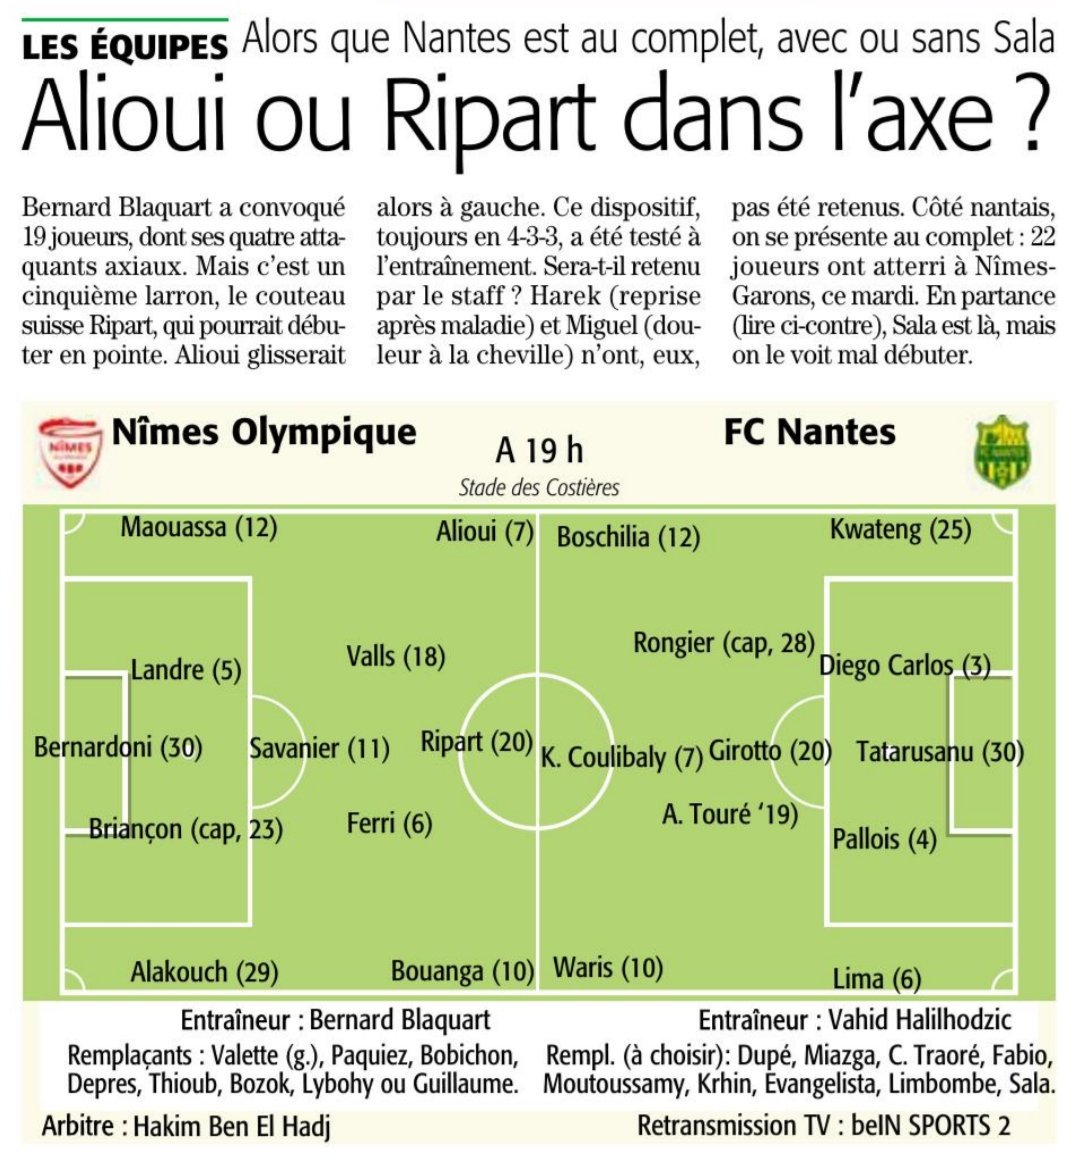 17ème journée de Ligue 1 Conforama : NÎMES OLYMPIQUE - FC NANTES  - Page 2 DxBpV4mWsAAT-P3